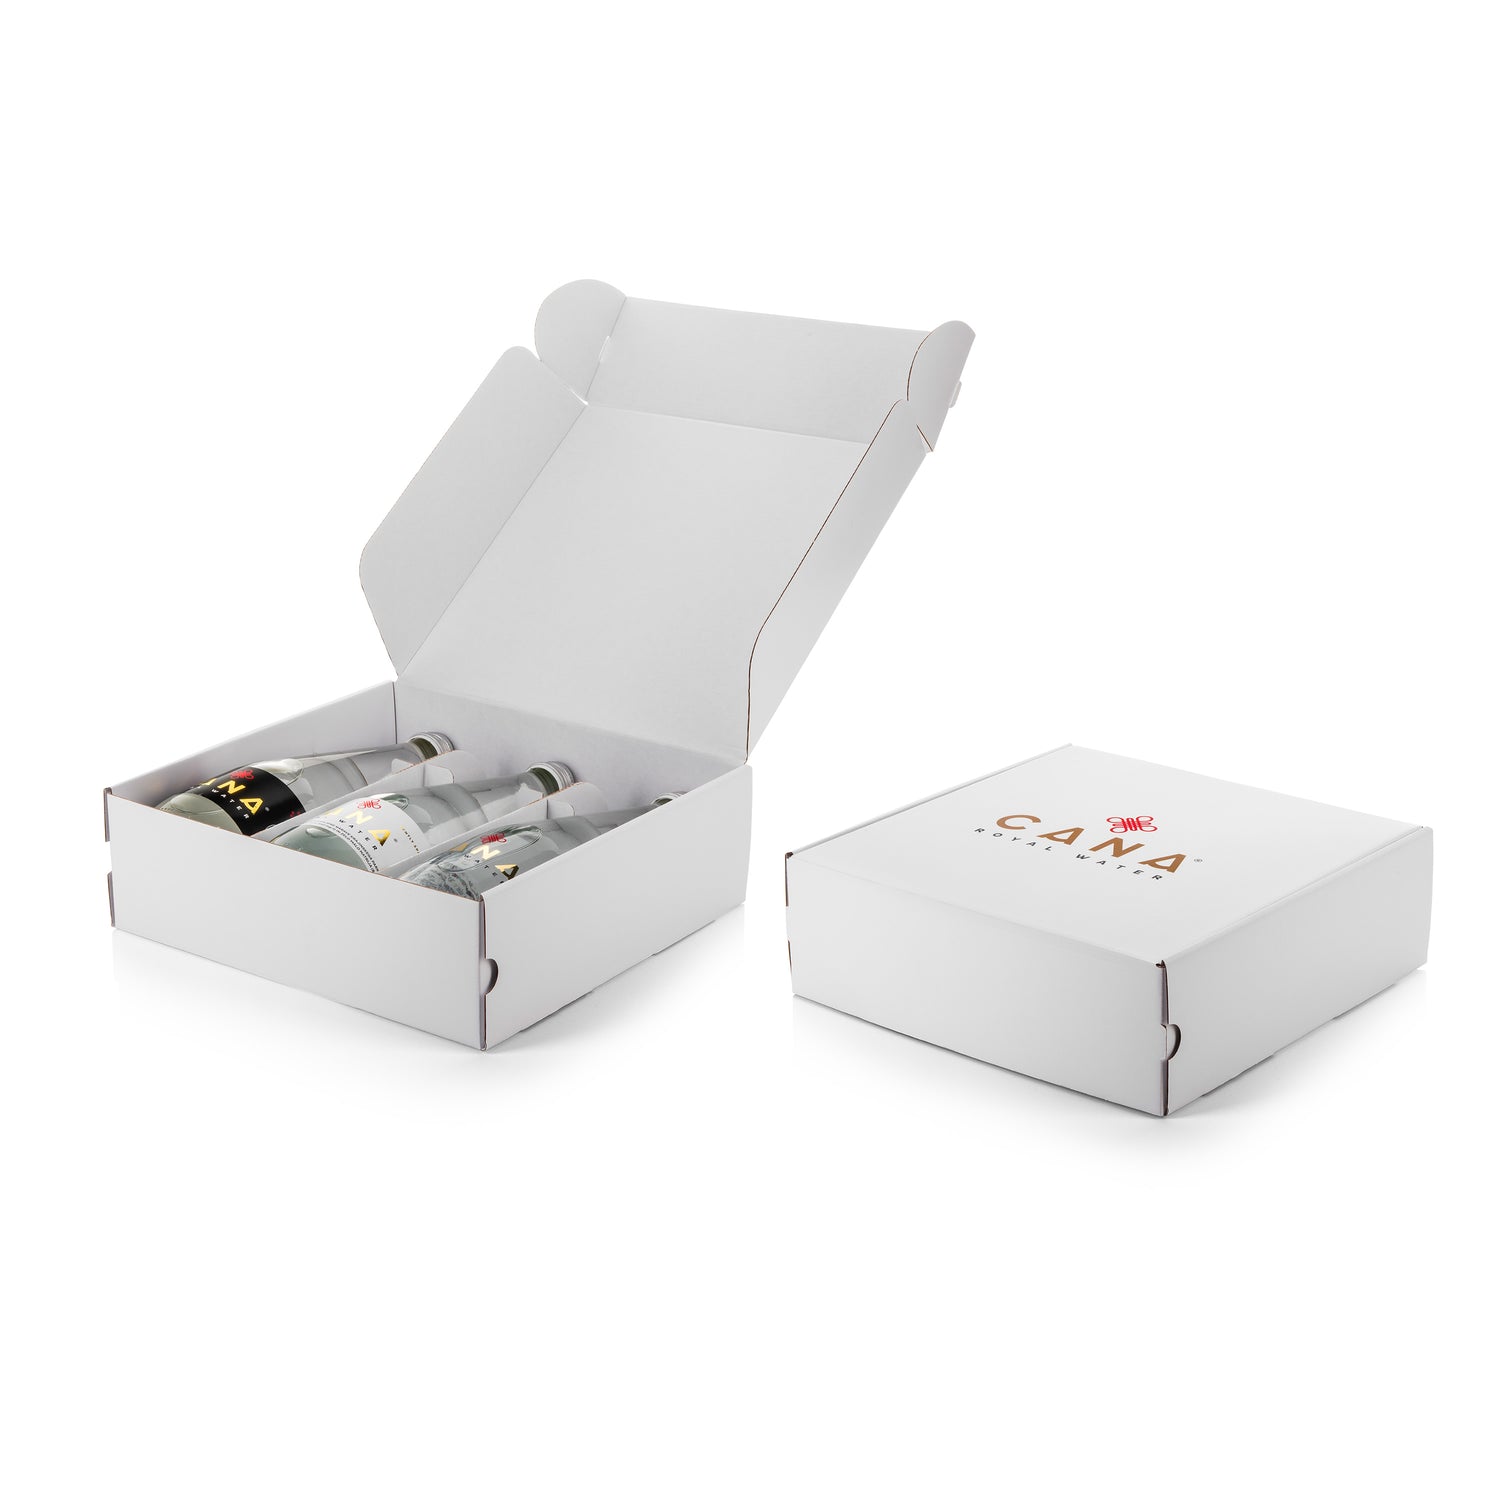 Cana Royal Gift Box